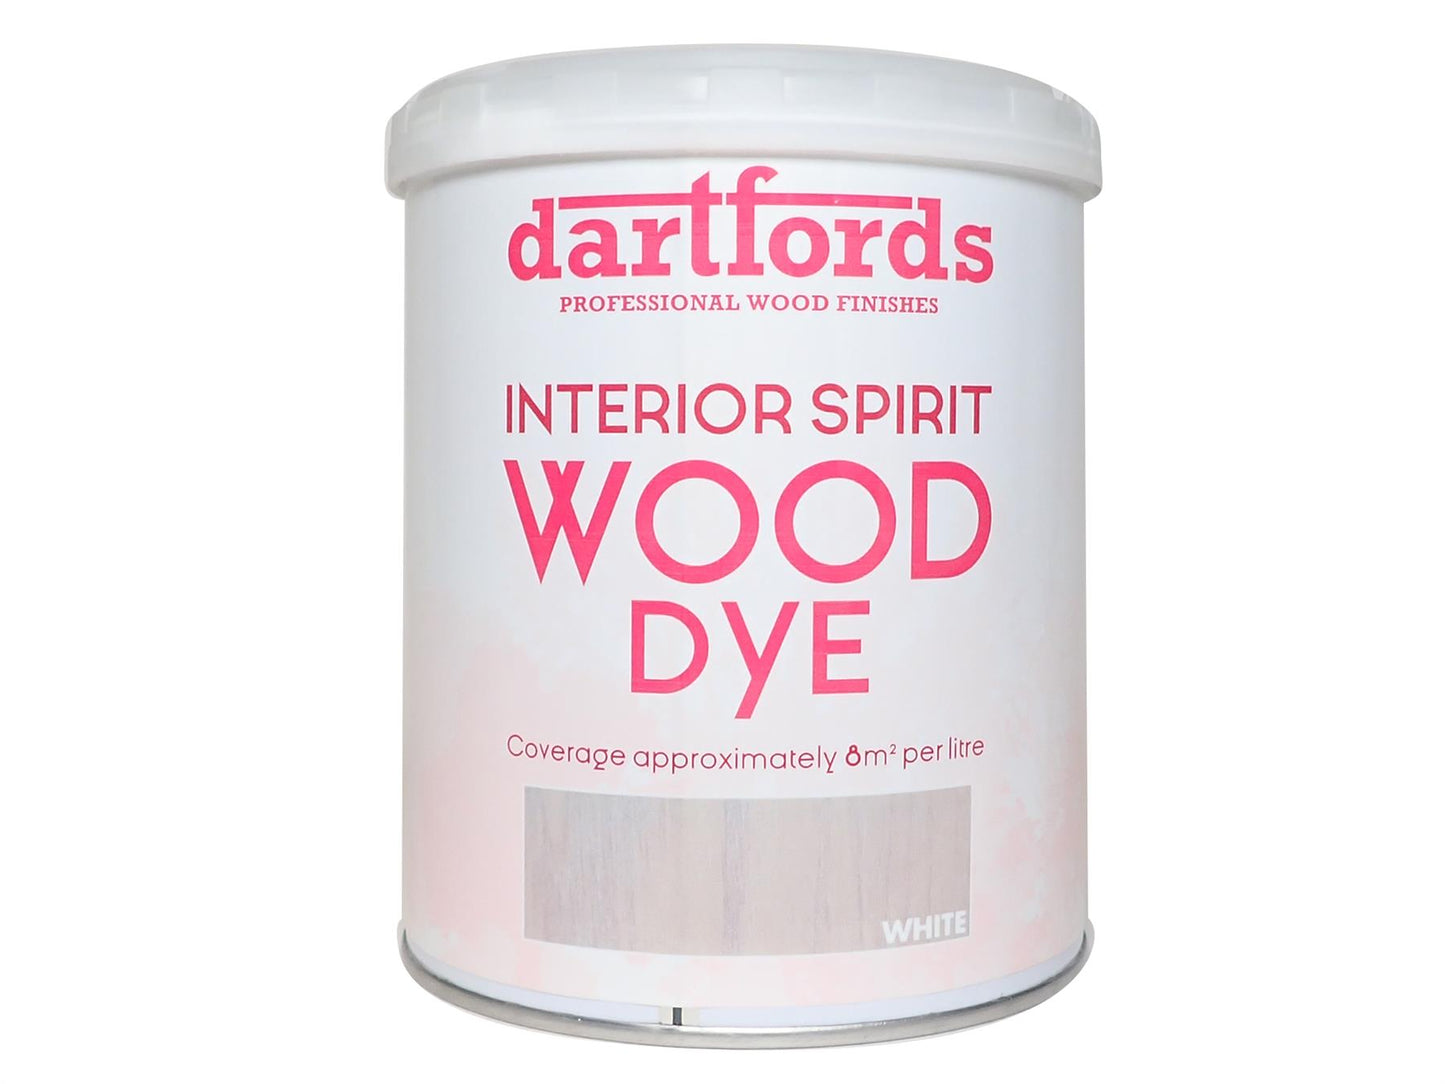 dartfords White Interior Spirit Based Wood Dye - 1 litre Tin